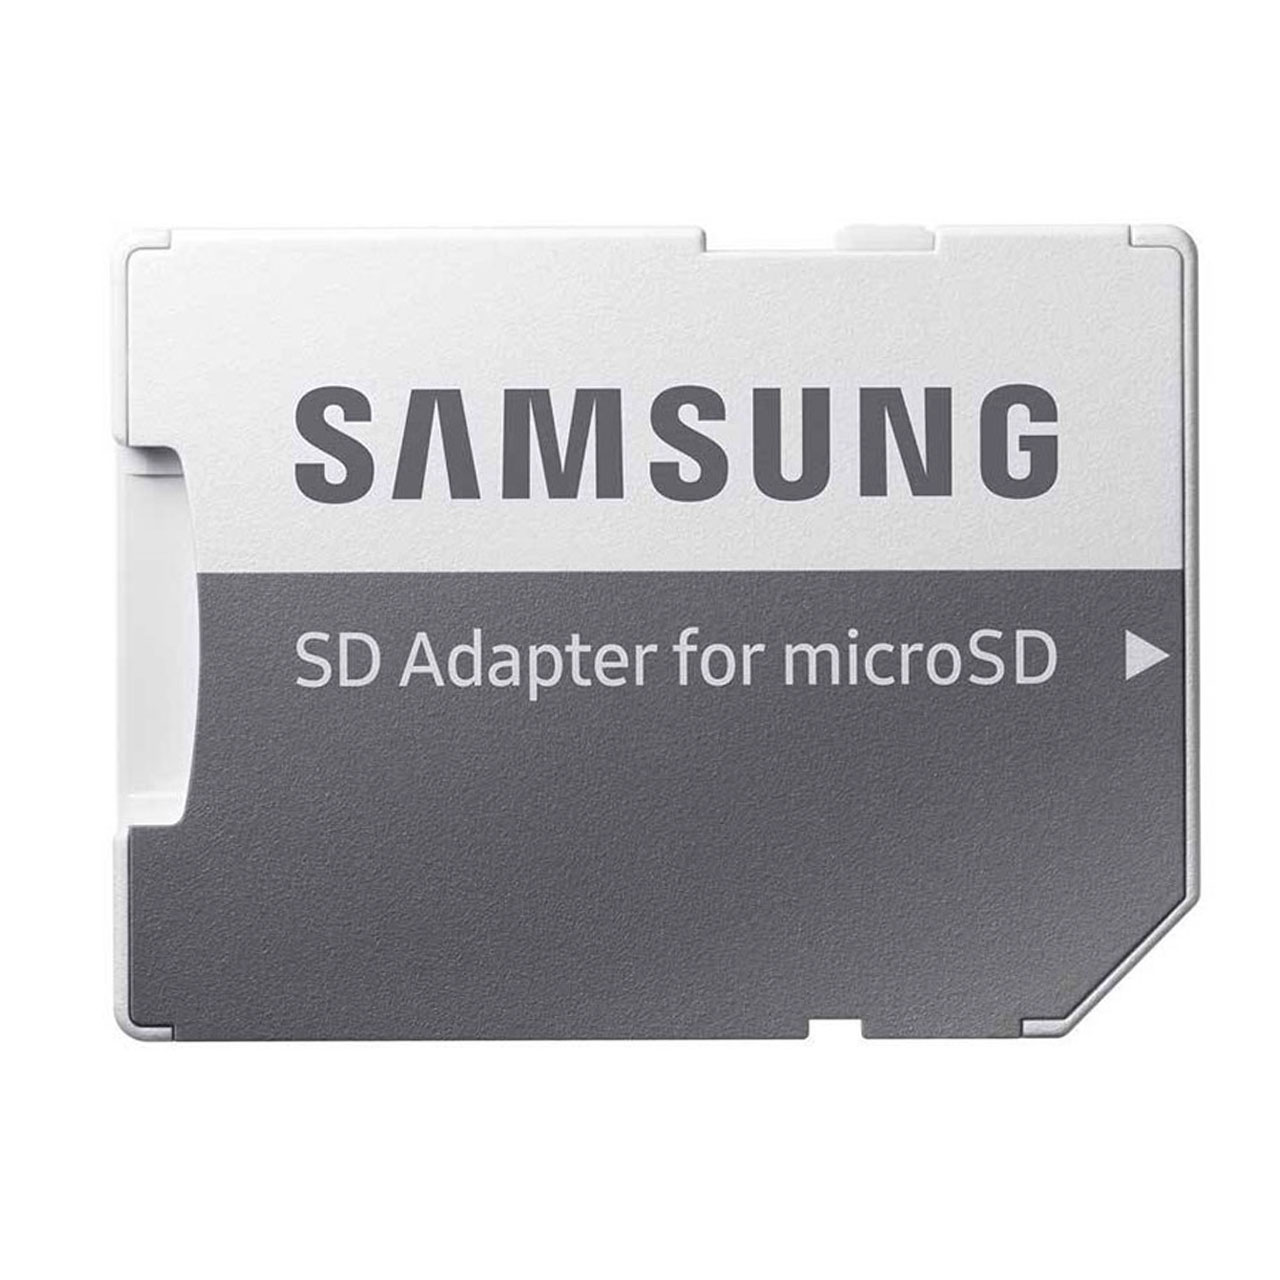 کارت حافظه microSDXC مدل Evo Plus کلاس 10 استاندارد UHS-I U3 سرعت 100MBps ظرفیت 256 گیگابایت به همراه آداپتور SD